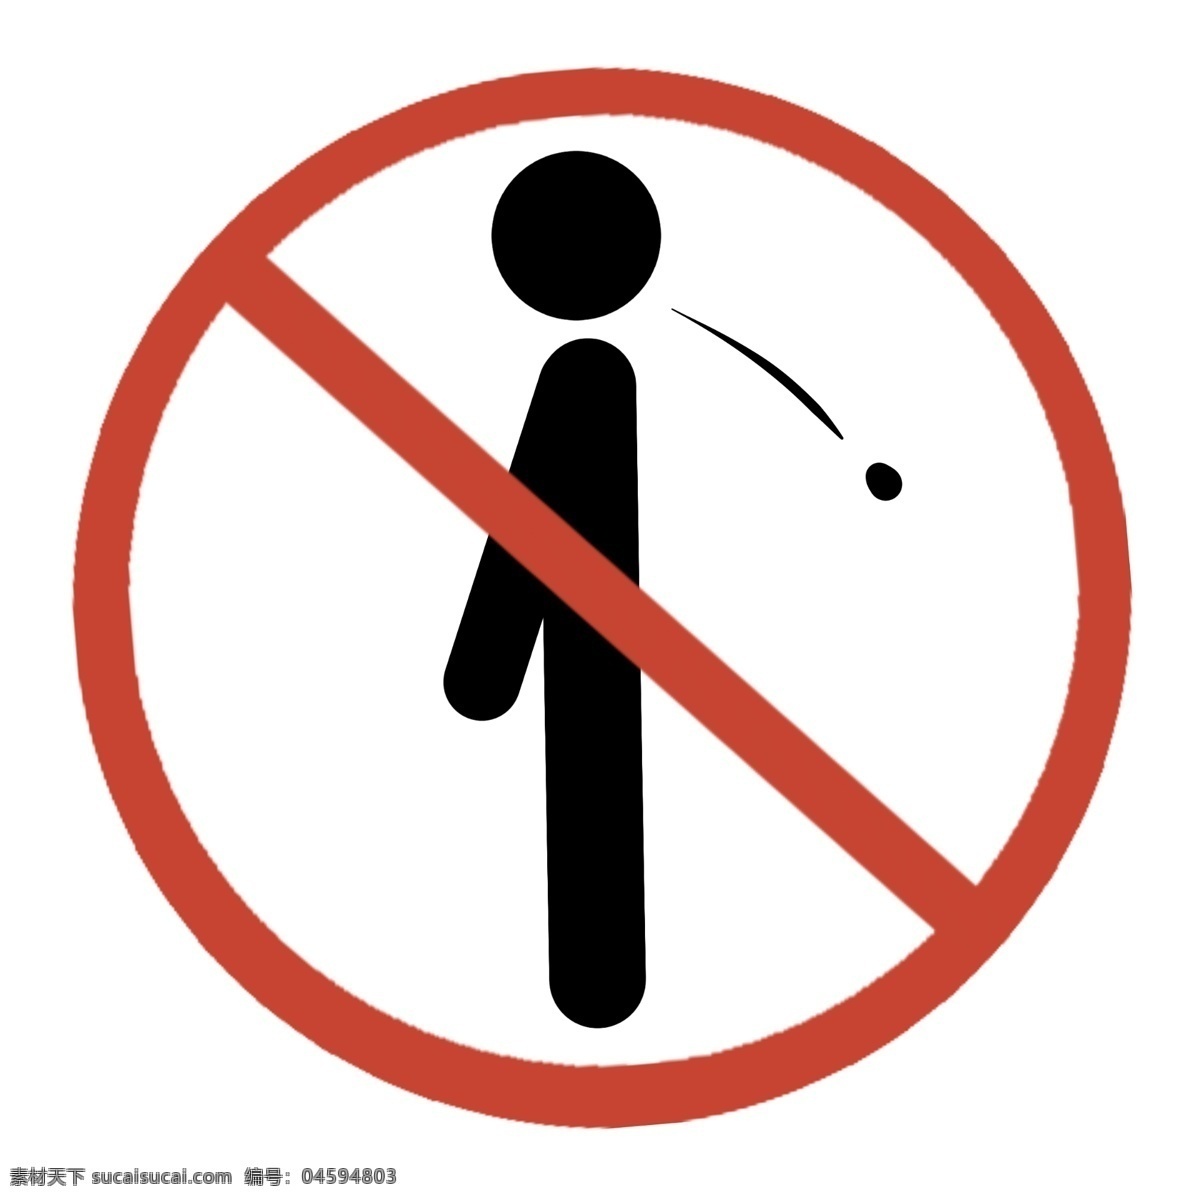 禁止 吐 痰 图标 插画 禁止吐痰图标 卡通插画 图标插画 禁止图标 警示图标 警告图标 红色的图标